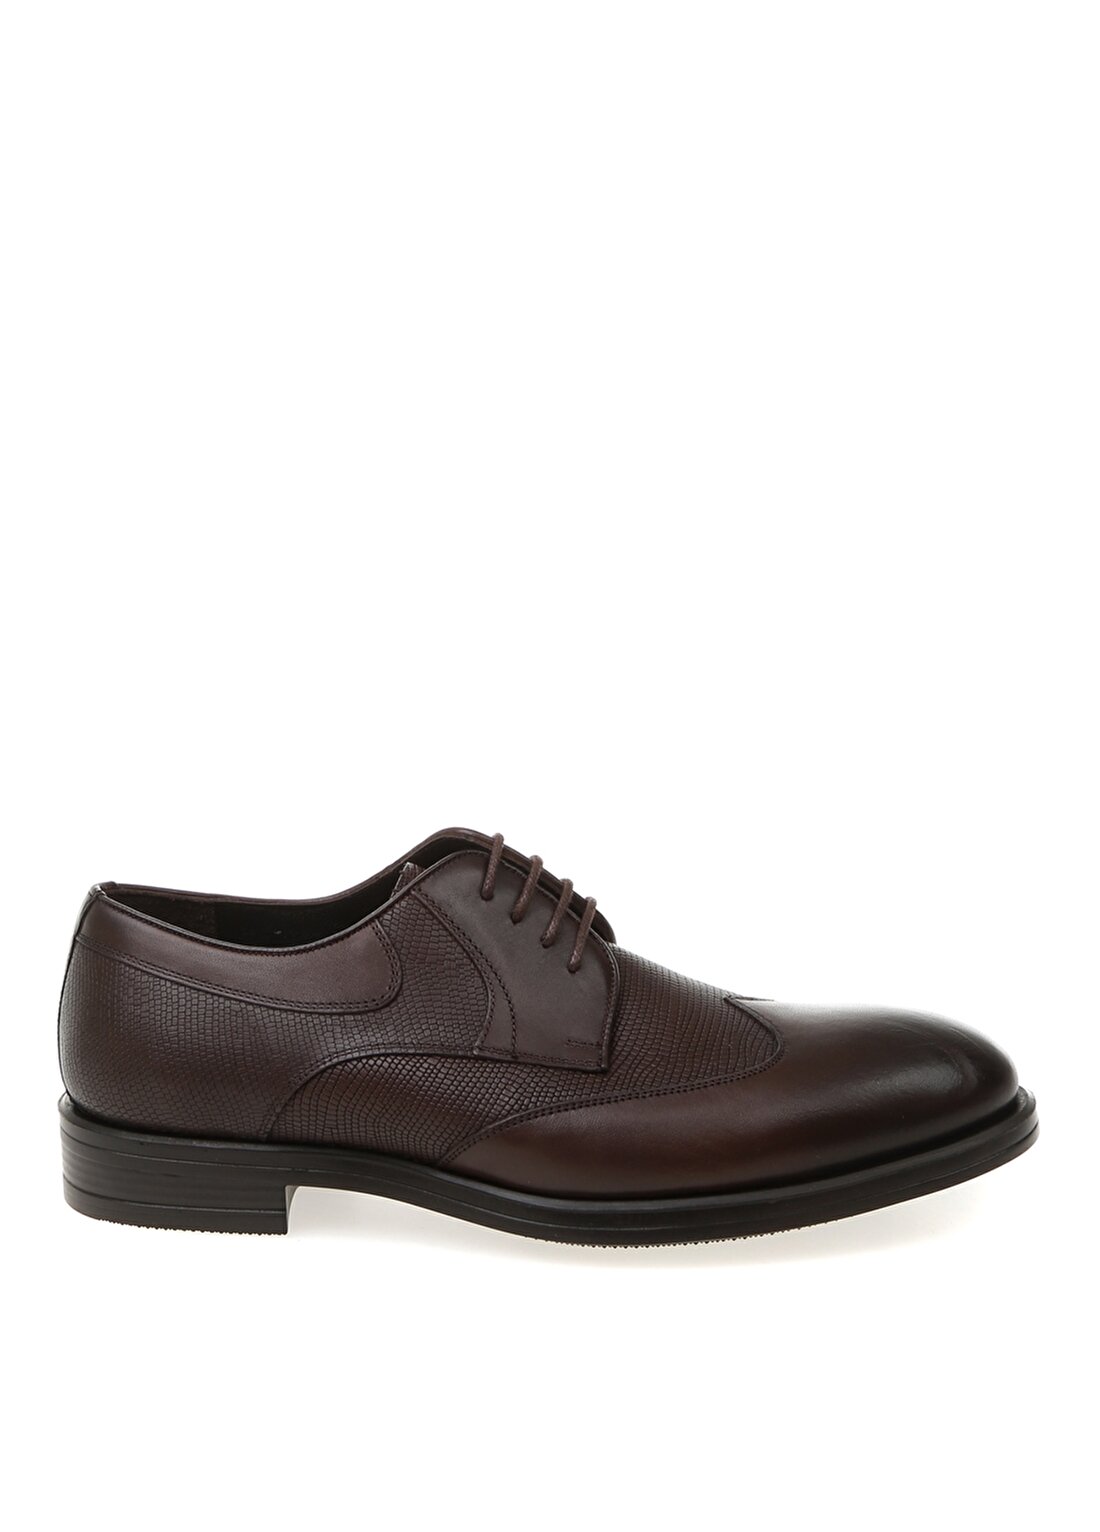 Beymen Business Kahverengi Klasik Ayakkabı